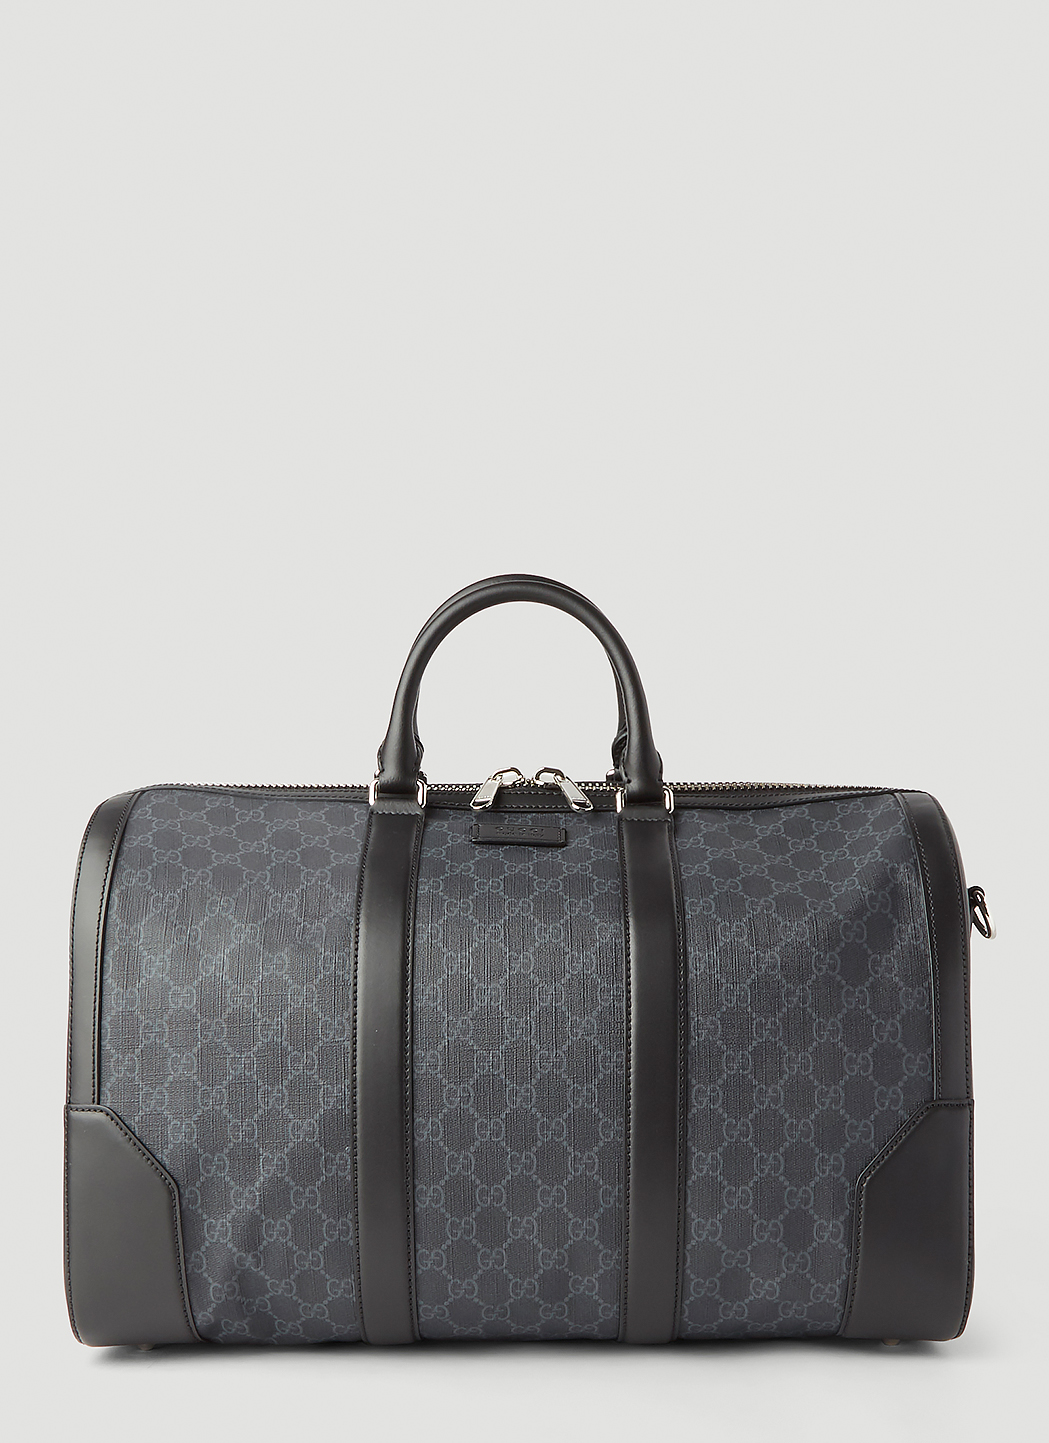 Mængde af Igangværende Es Gucci Unisex GG Carry-On Duffle Bag in Black | LN-CC®